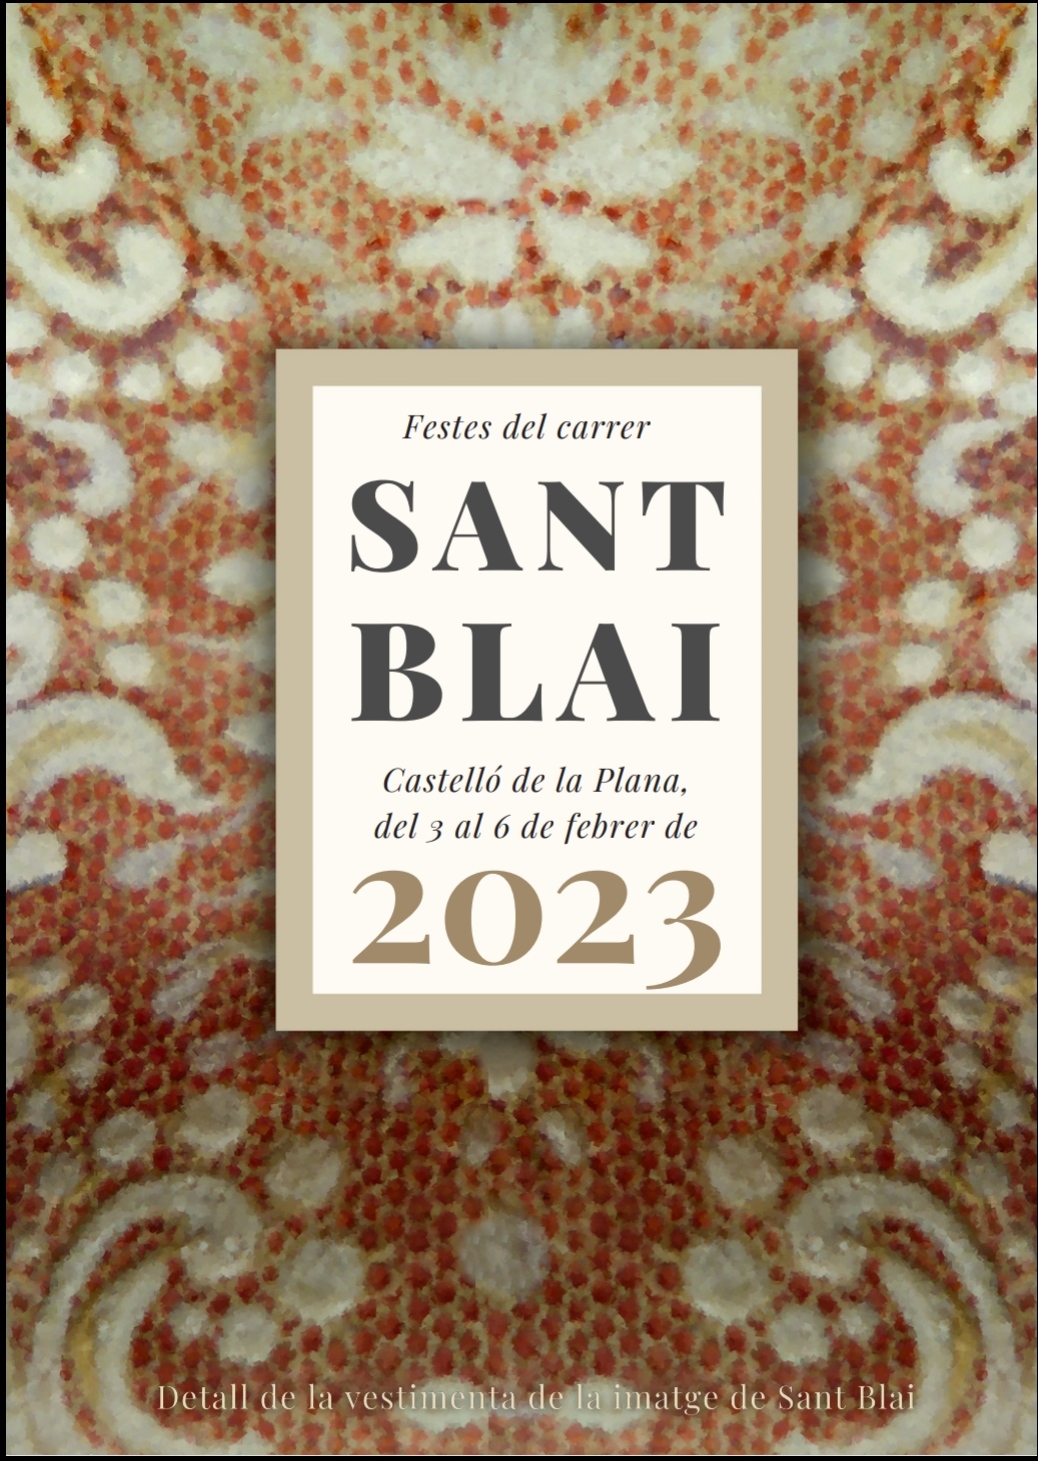 Misa festividad Sant Blai 2023